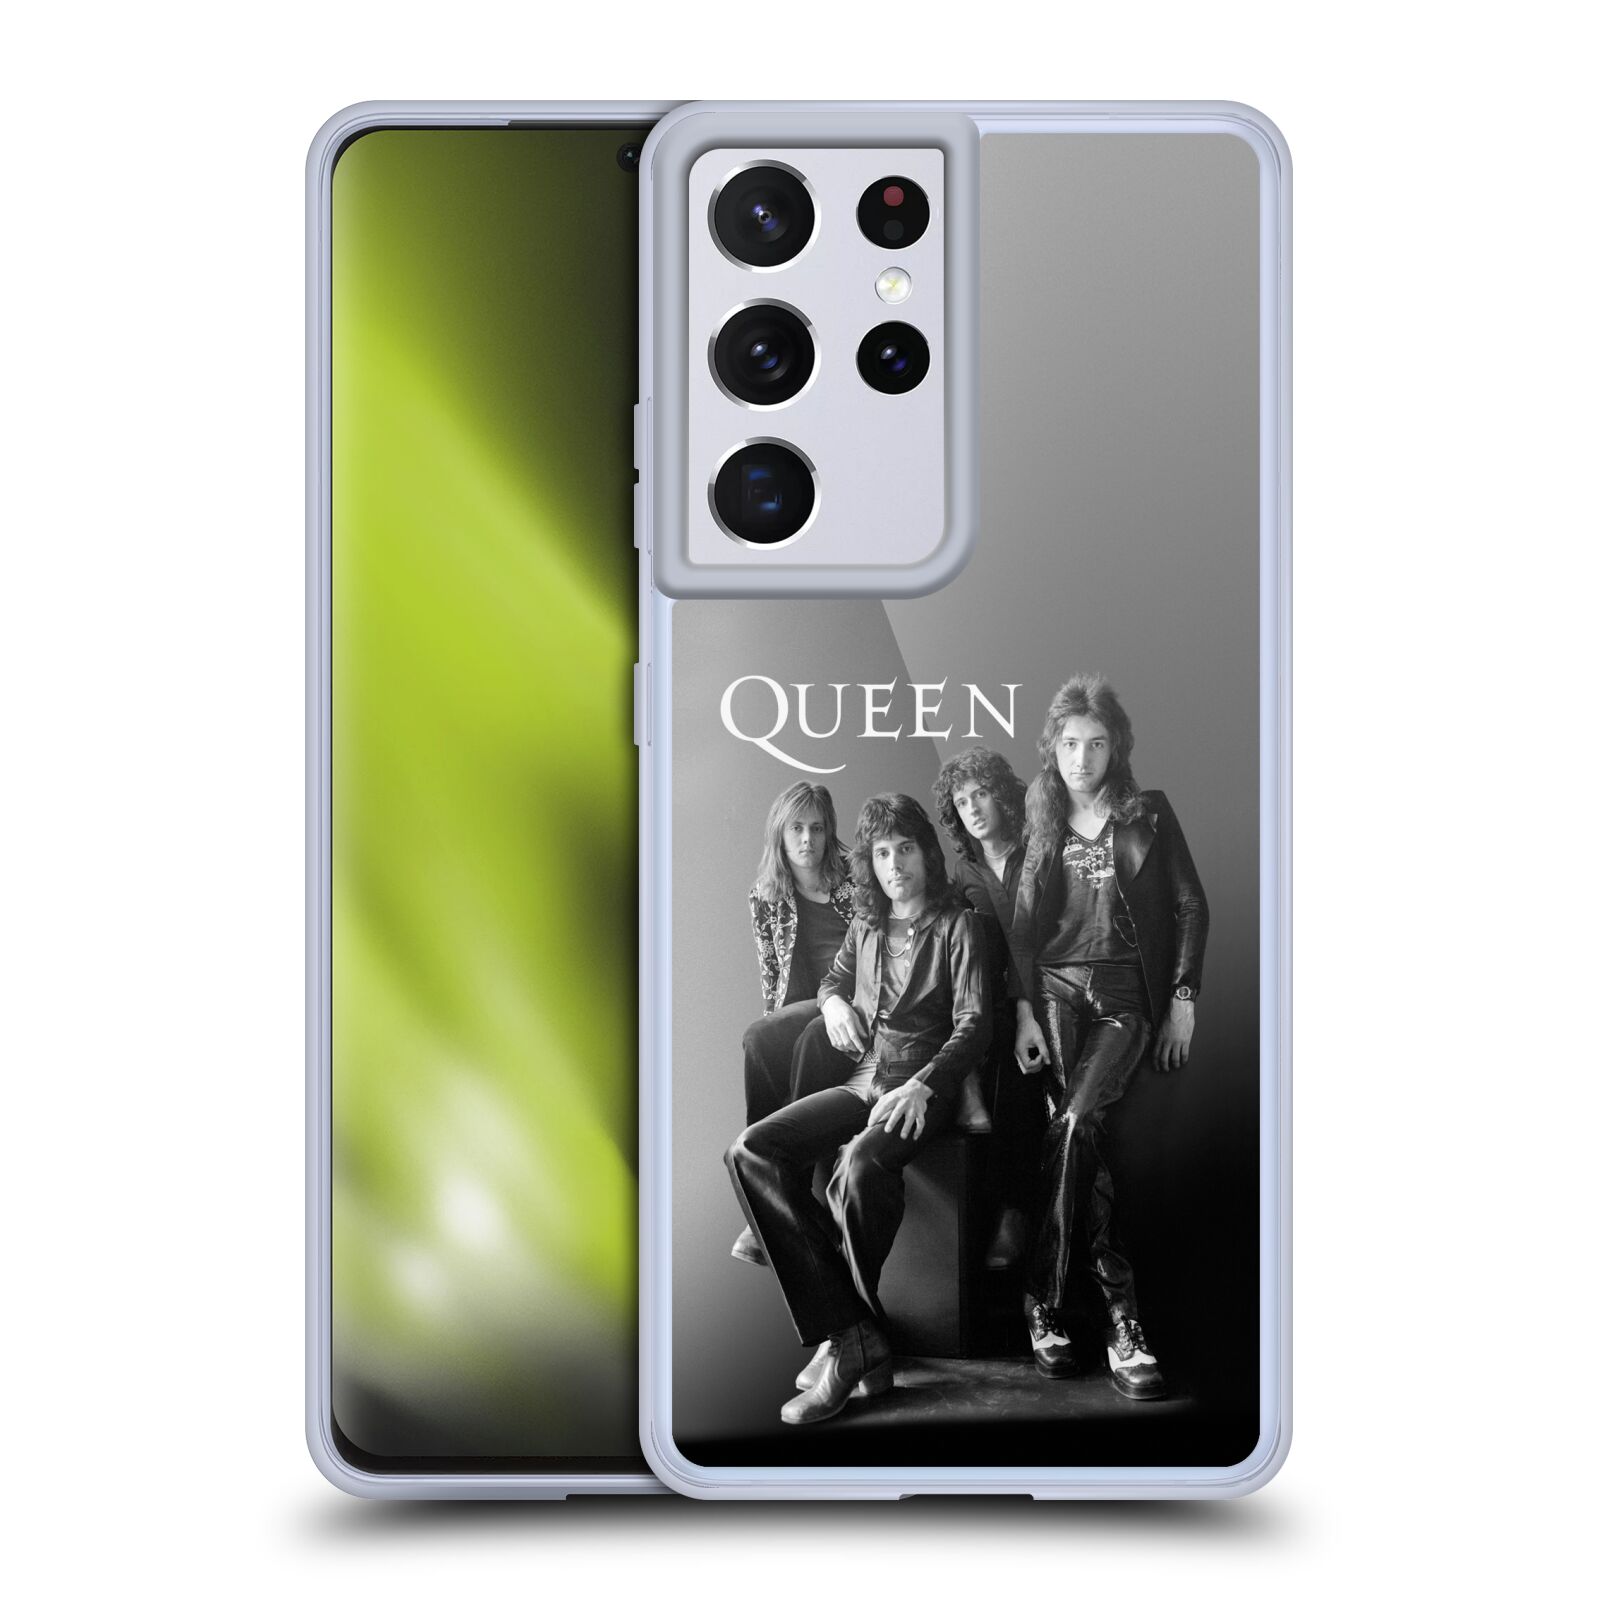 Silikonové pouzdro na mobil Samsung Galaxy S21 Ultra 5G - Head Case - Queen - Skupina (Silikonový kryt, obal, pouzdro na mobilní telefon Samsung Galaxy S21 Ultra 5G G998B s motivem Queen - Skupina)